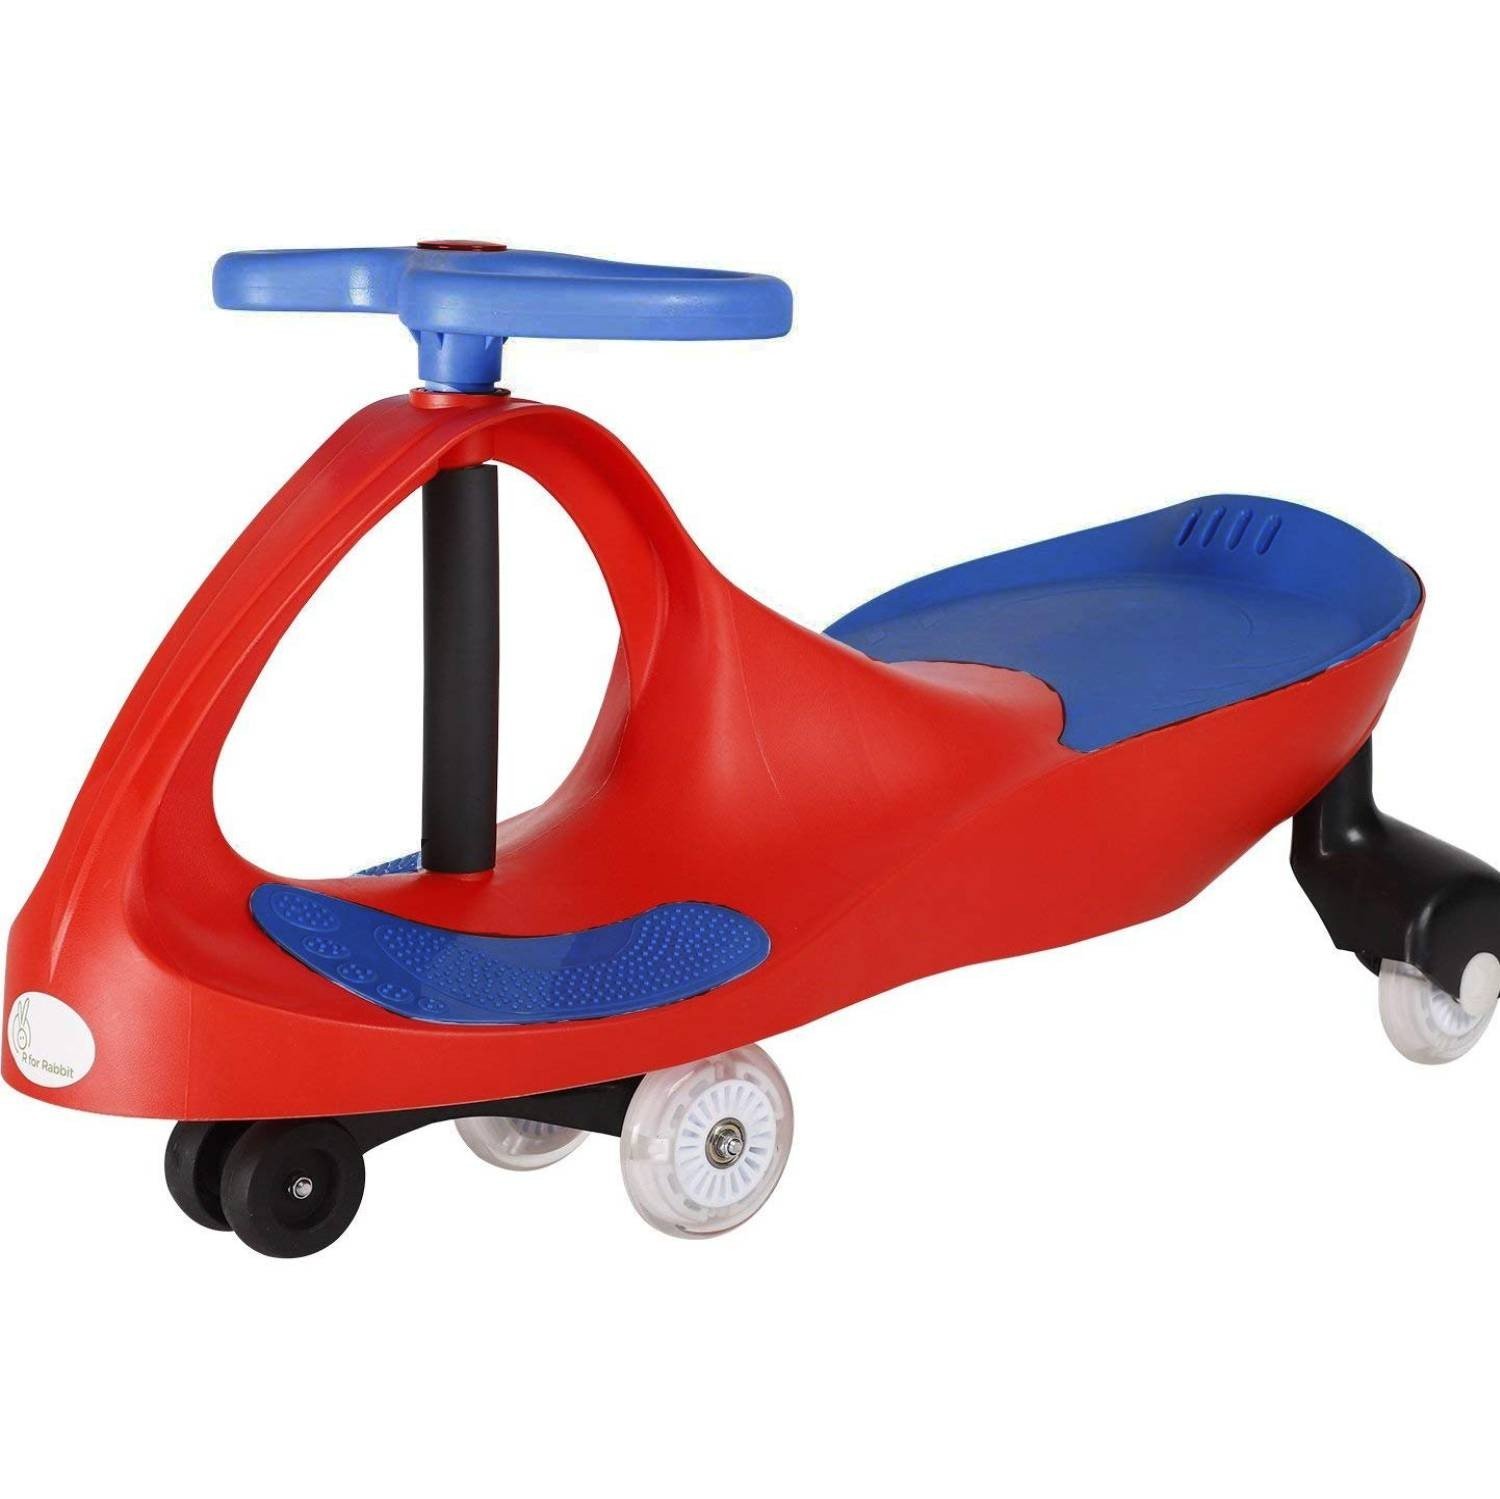 Детская машинка Twistcar Red Blue